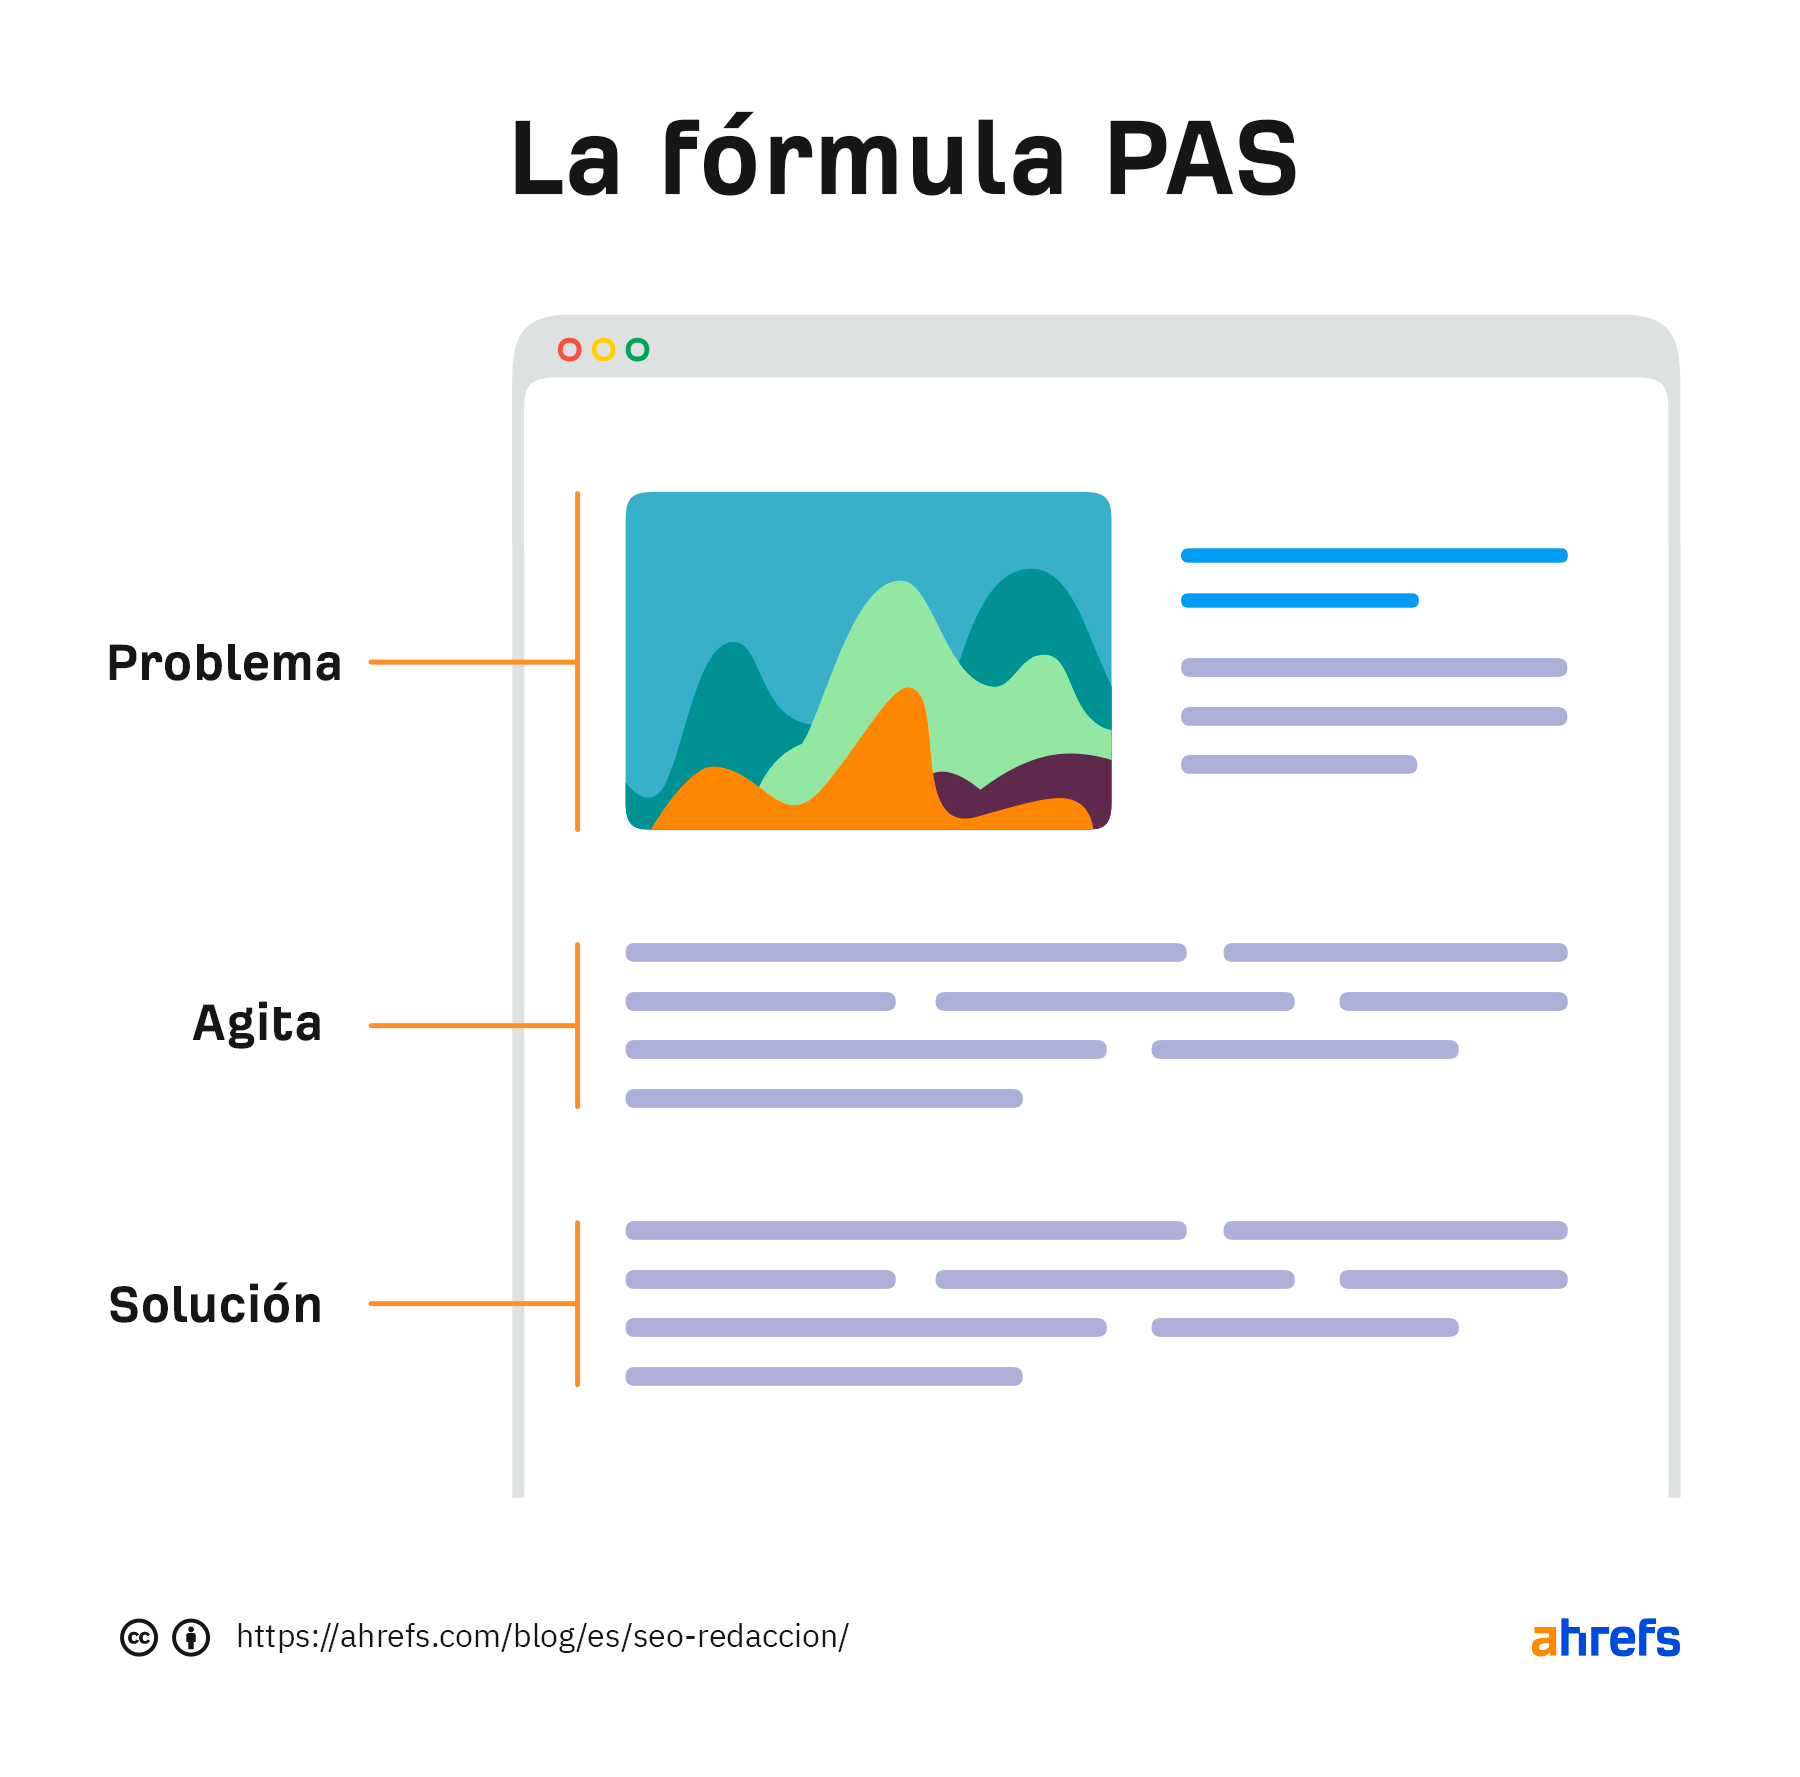 Ilustración de la fórmula PAS.